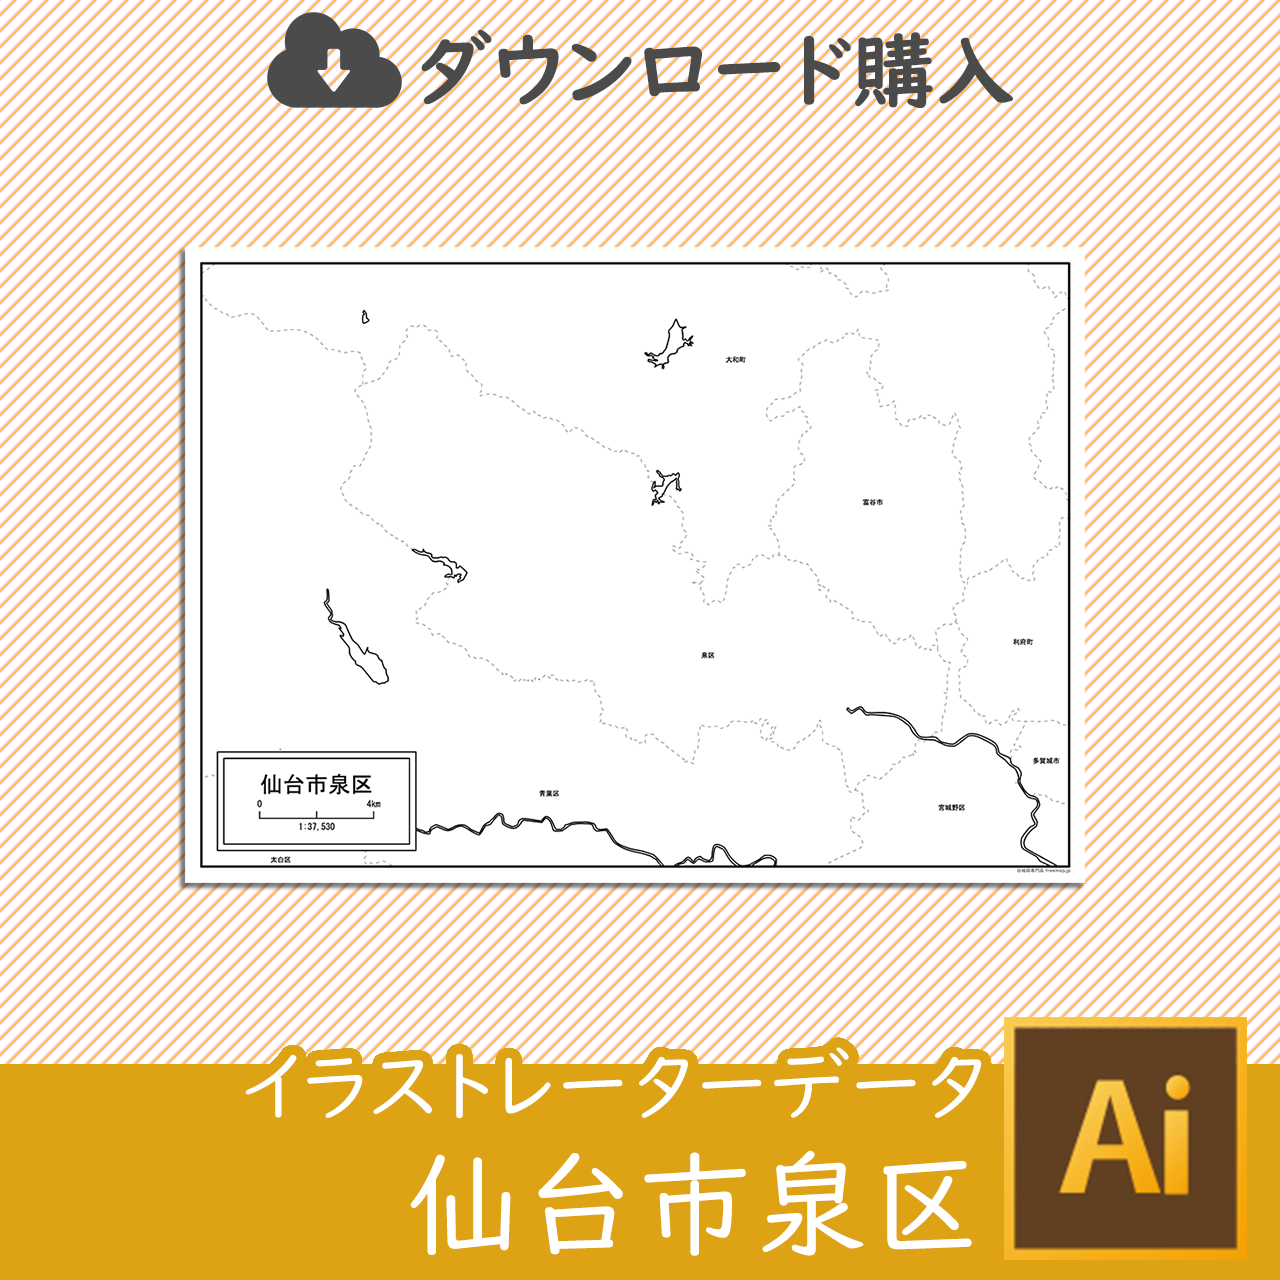 仙台市泉区のaiデータのサムネイル画像